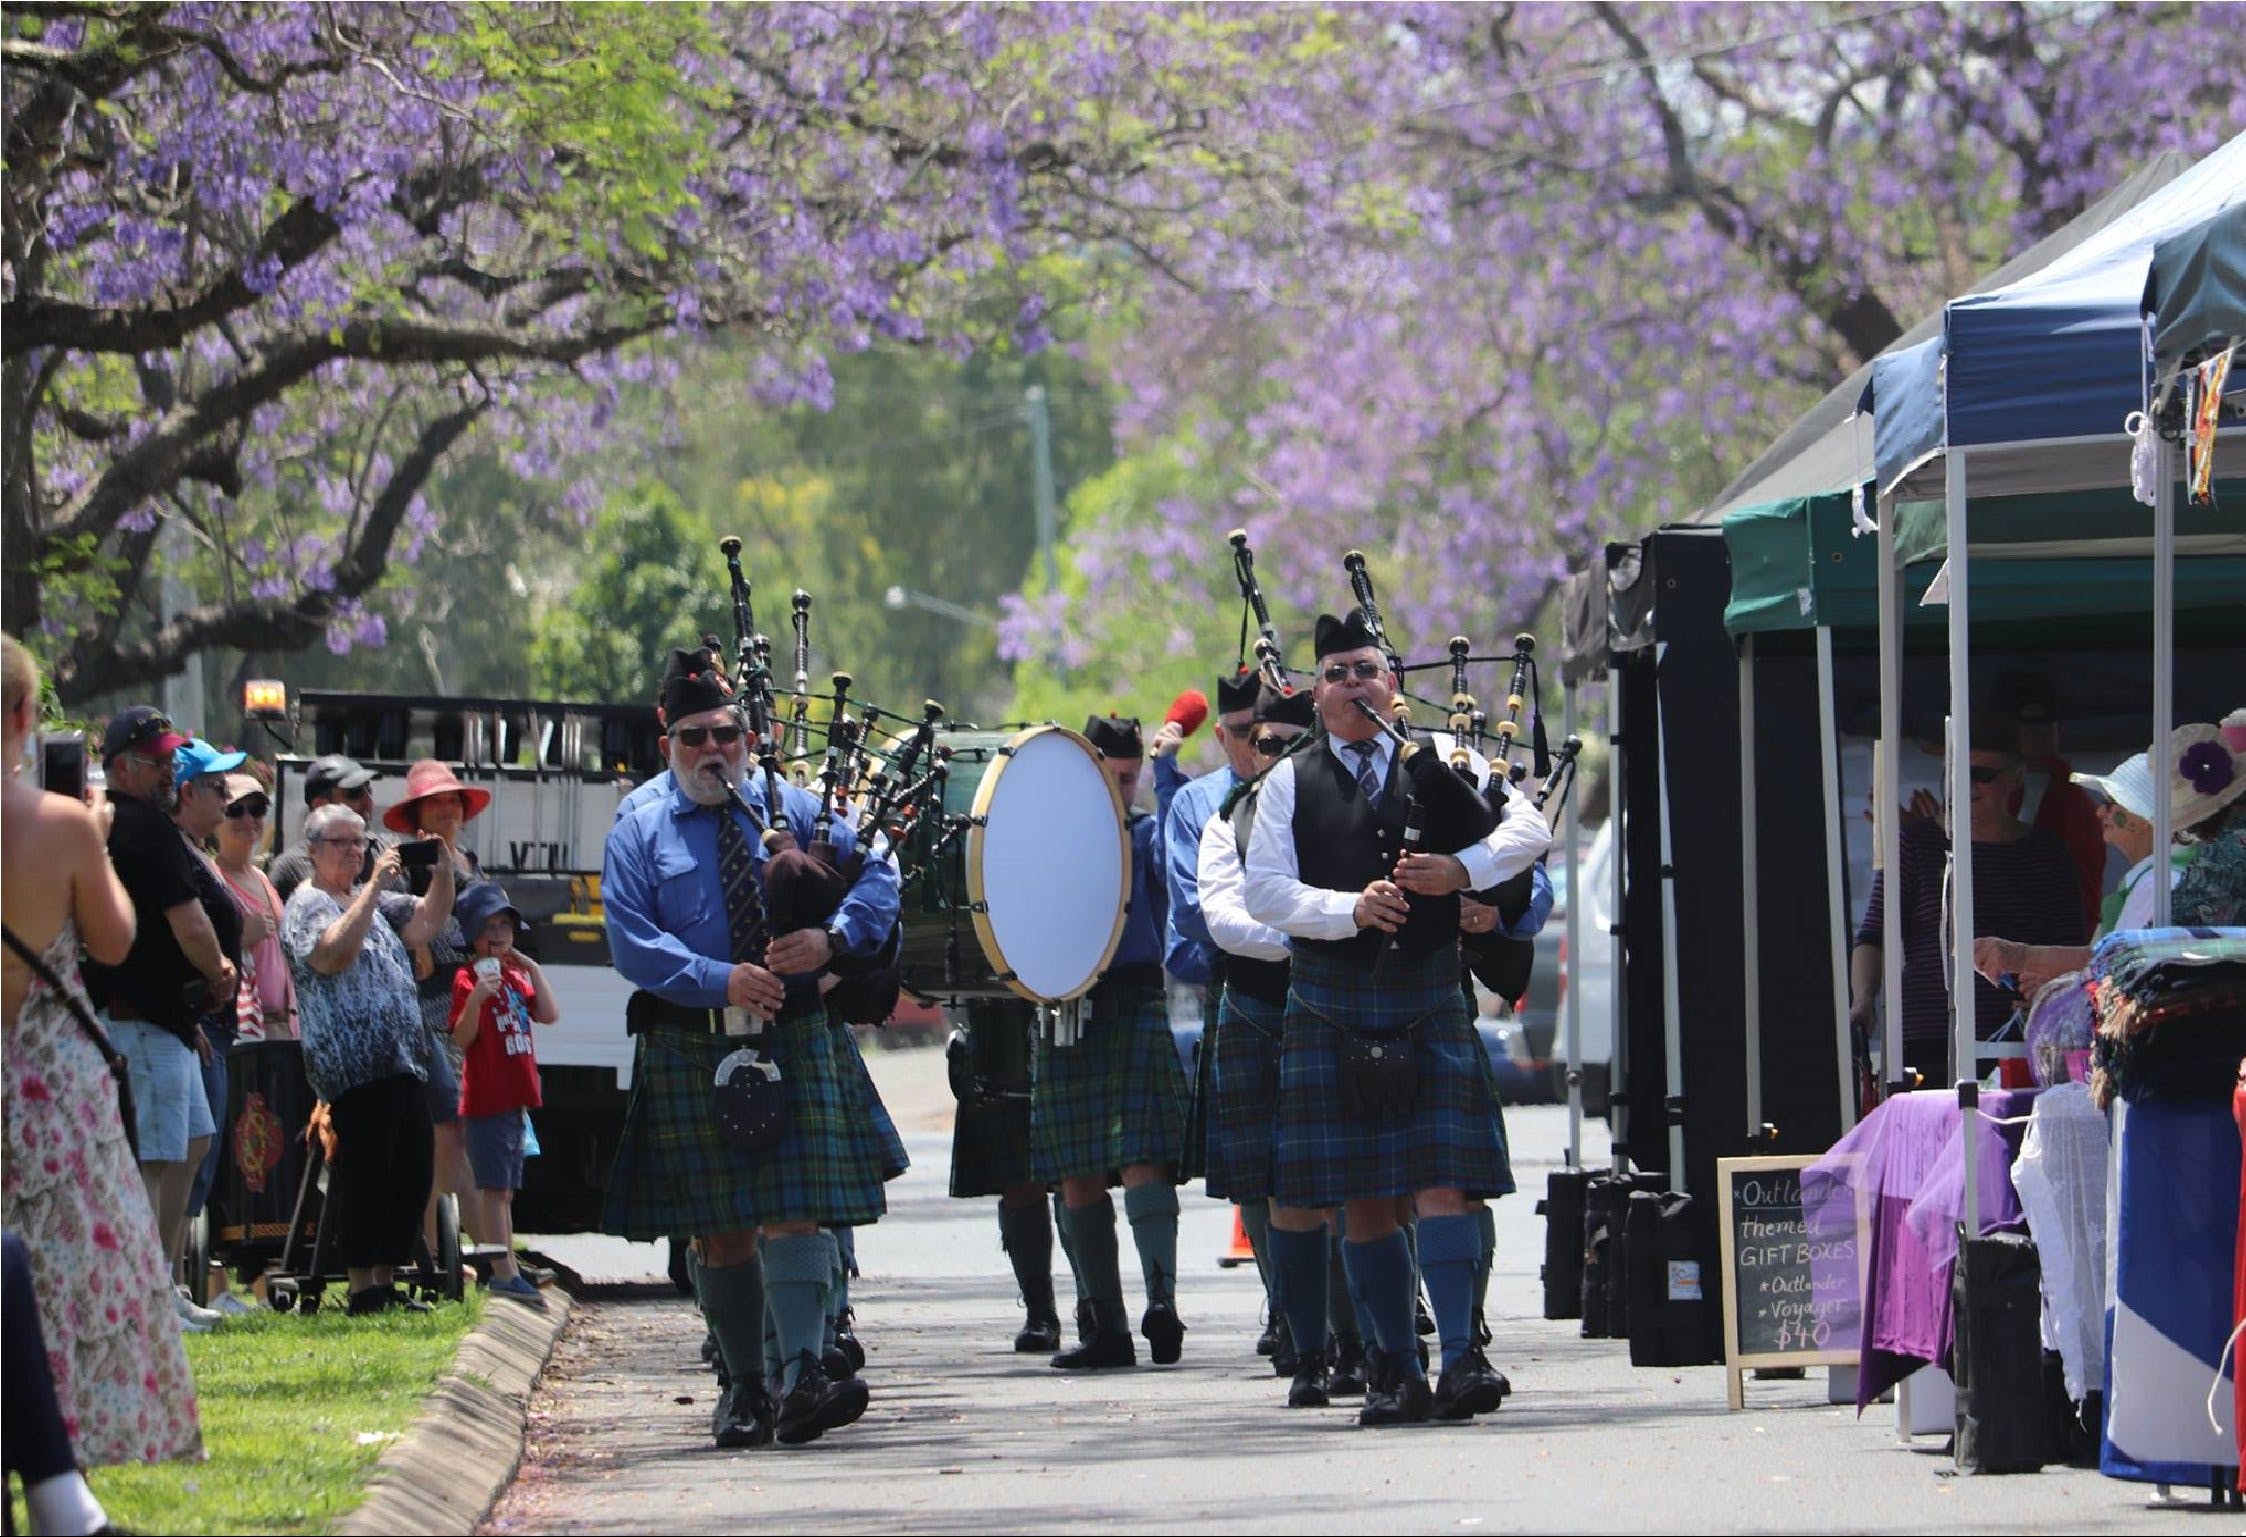 Celtic Festival of Queensland - Tourism Canberra